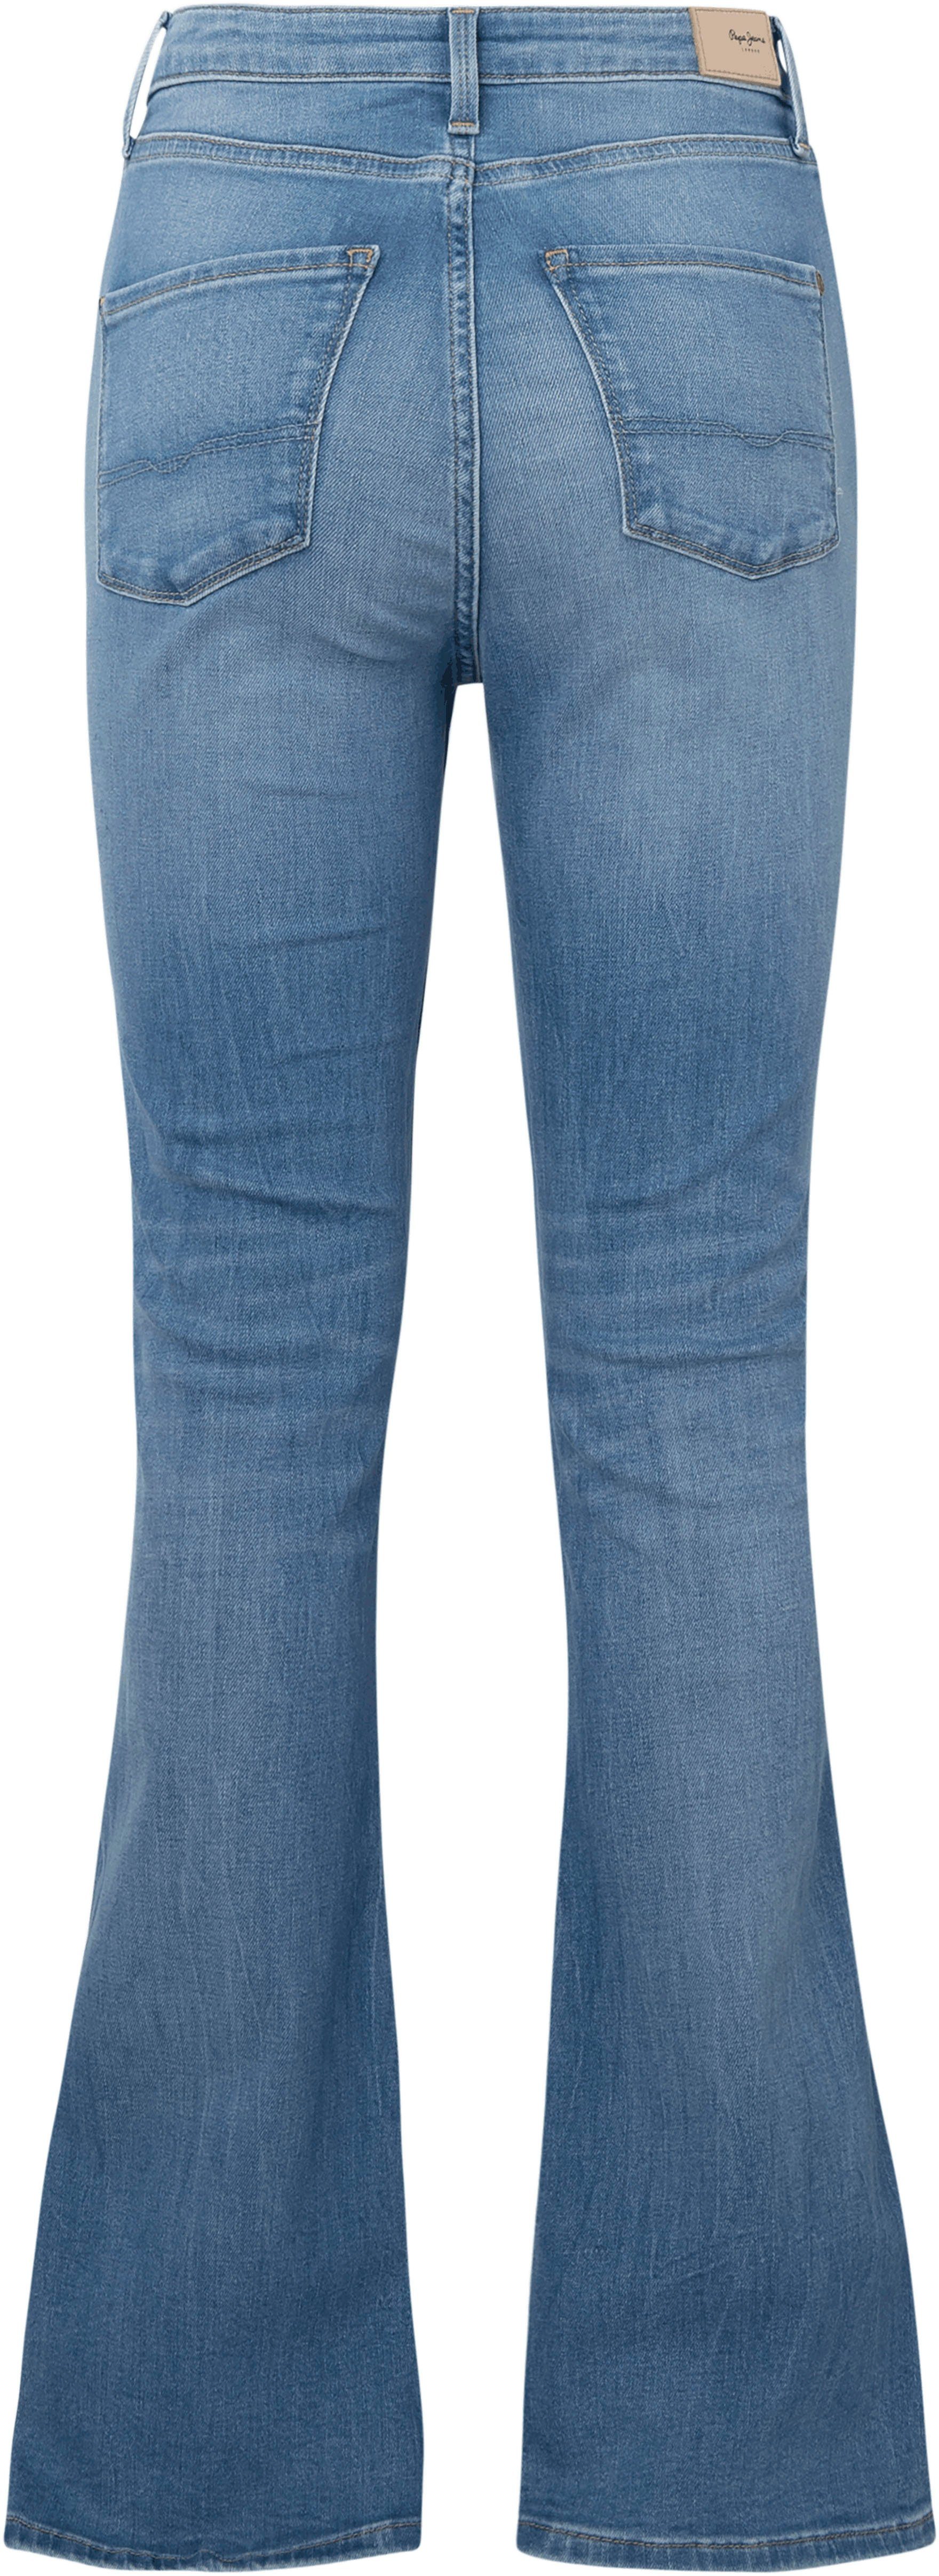 Damen Jeans Pepe Jeans Bootcut-Jeans DION FLARE mit hohem Bund, Stretch-Anteil und in 7/8-Länge